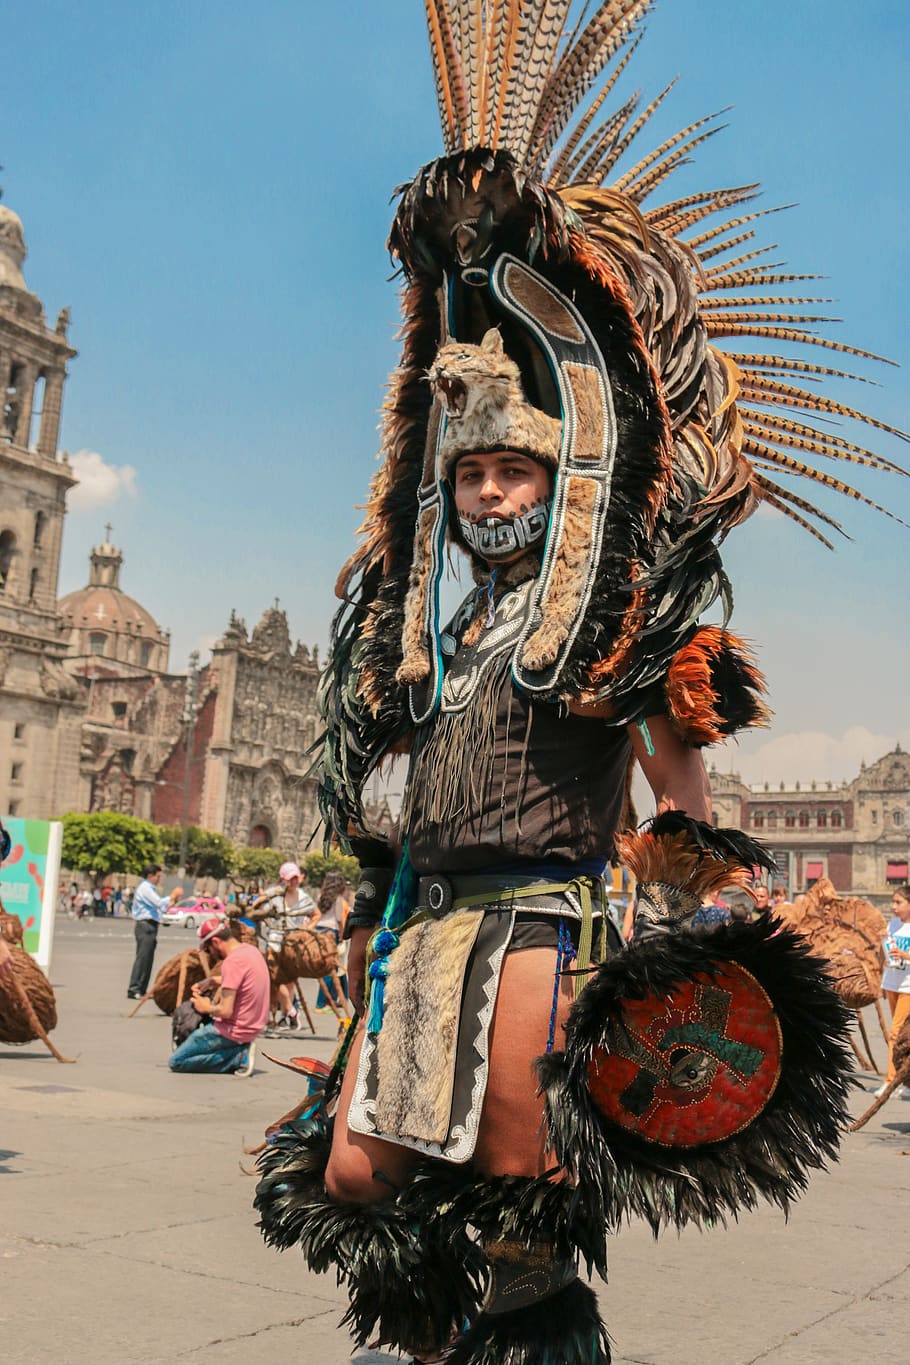 orang-orang, kostum, penari, perjalanan, tradisional, potret, kota meksiko, man, orang sungguhan, Arsitektur